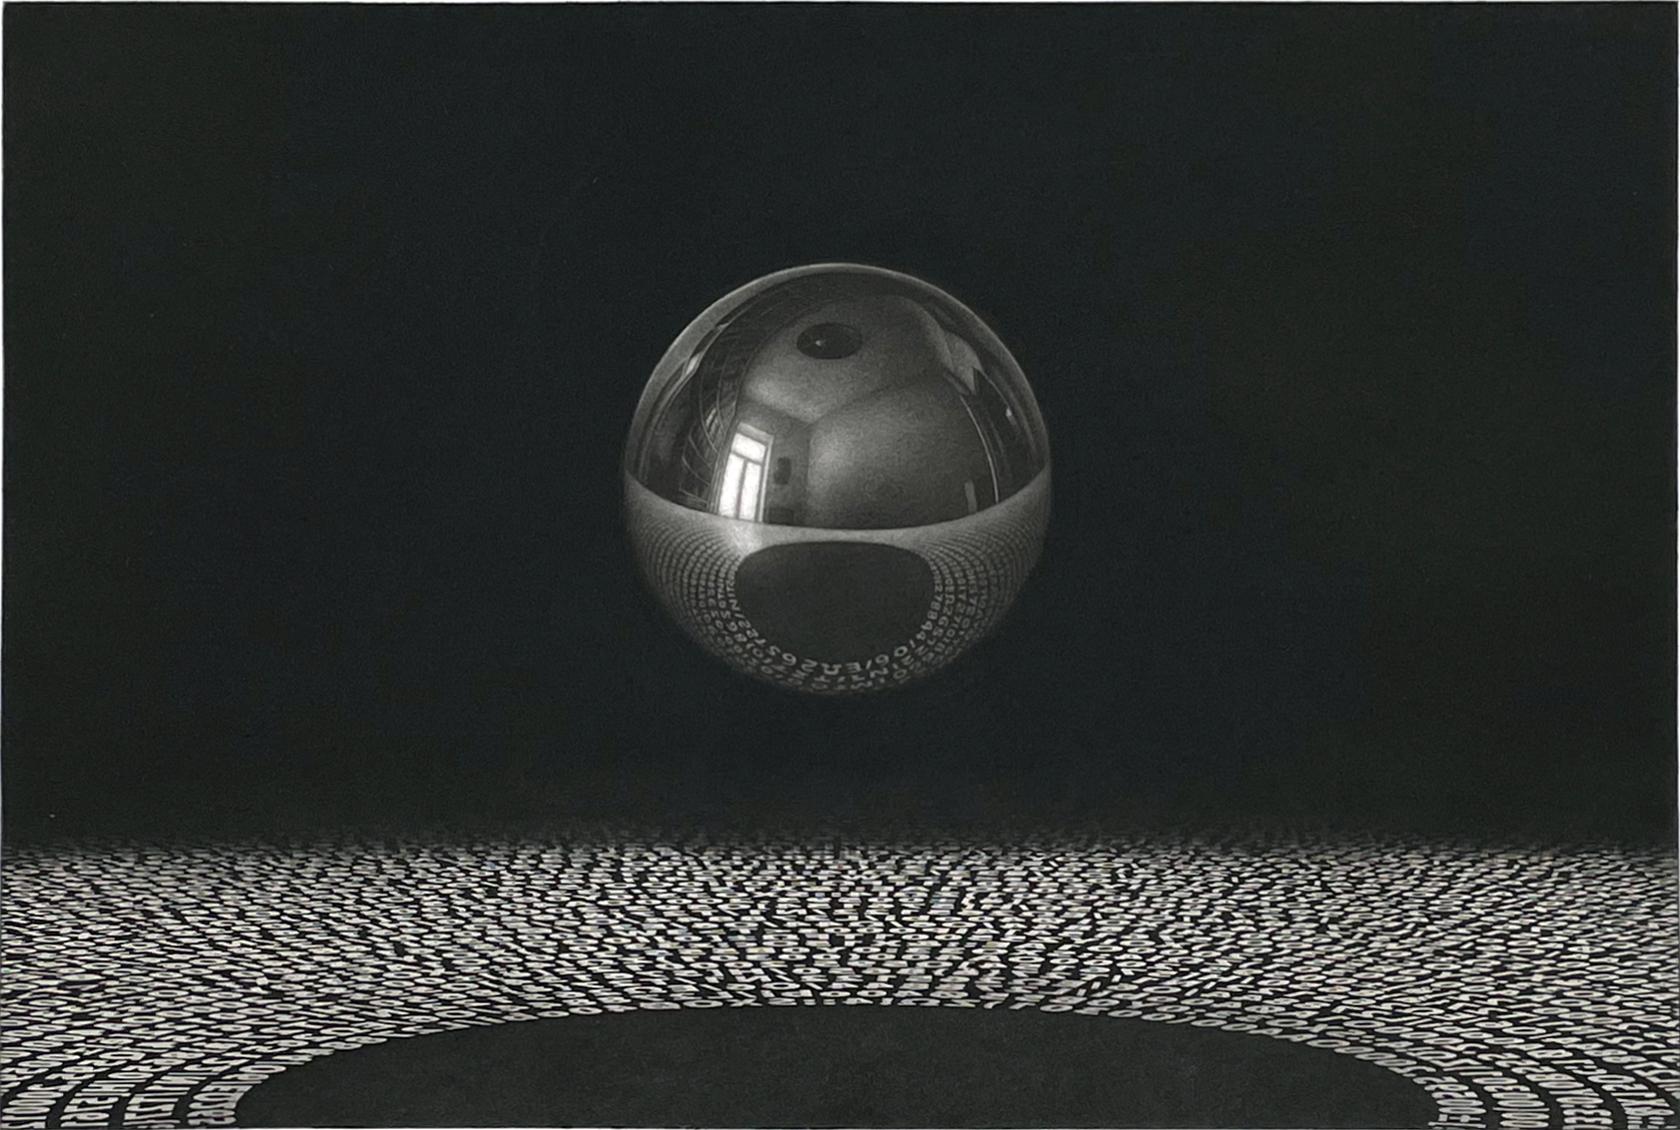 Médium : mezzotinte et aquatinte
Année : 2014
Edition : 30, signé au crayon.
Taille de l'image : 12 x 15.75 pouces
Signé, titré et numéroté par l'artiste.

Les illusions et les reflets dans les gravures d'A&M amènent souvent A.C. Escher à l'esprit,